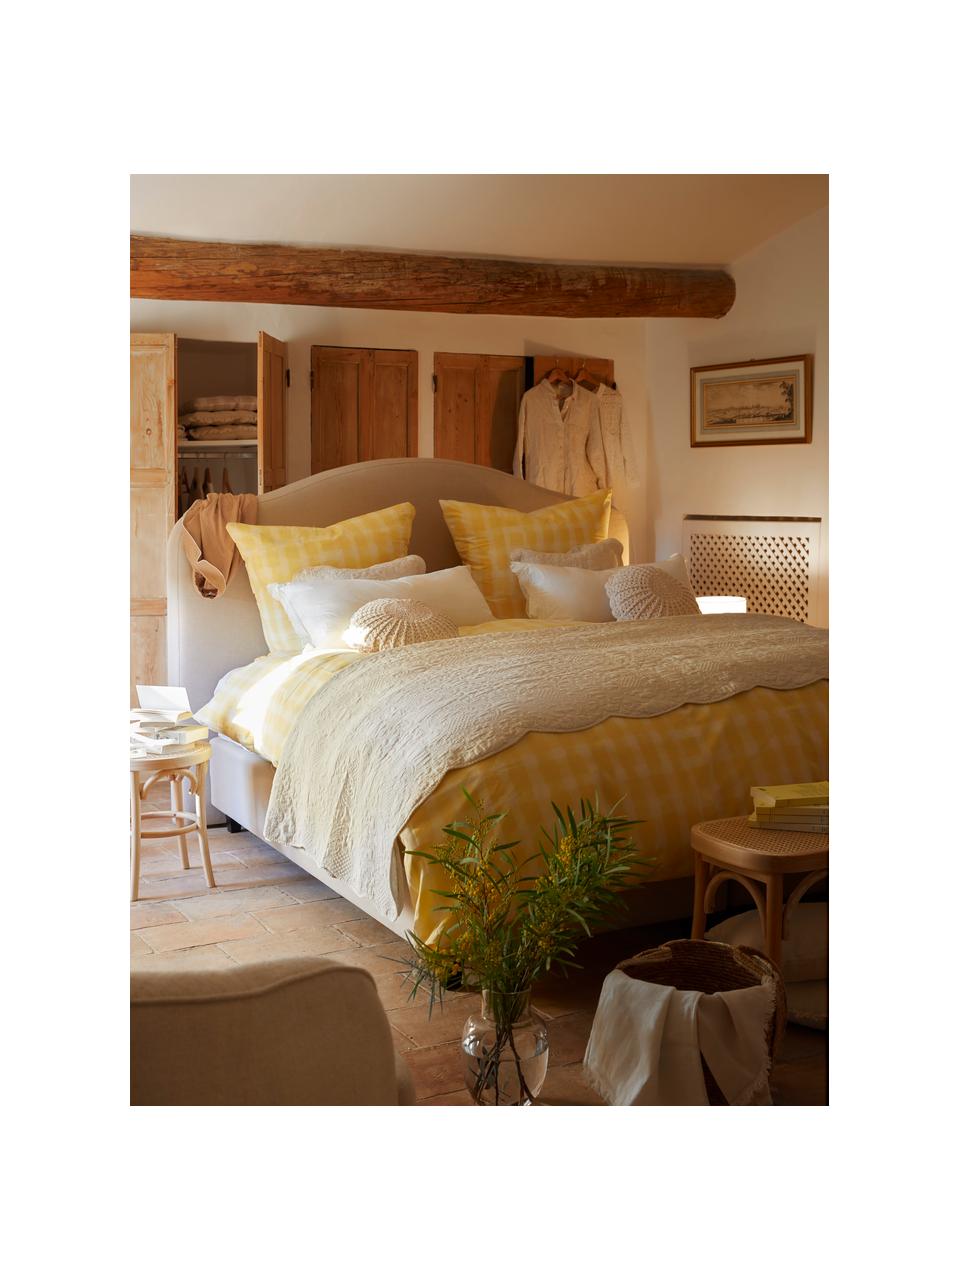 Ropa de cama de percal de algodón Milène, diseño Candice Gray, Amarillo, Cama 80 cm (135 x 200 cm), 2 pzas.